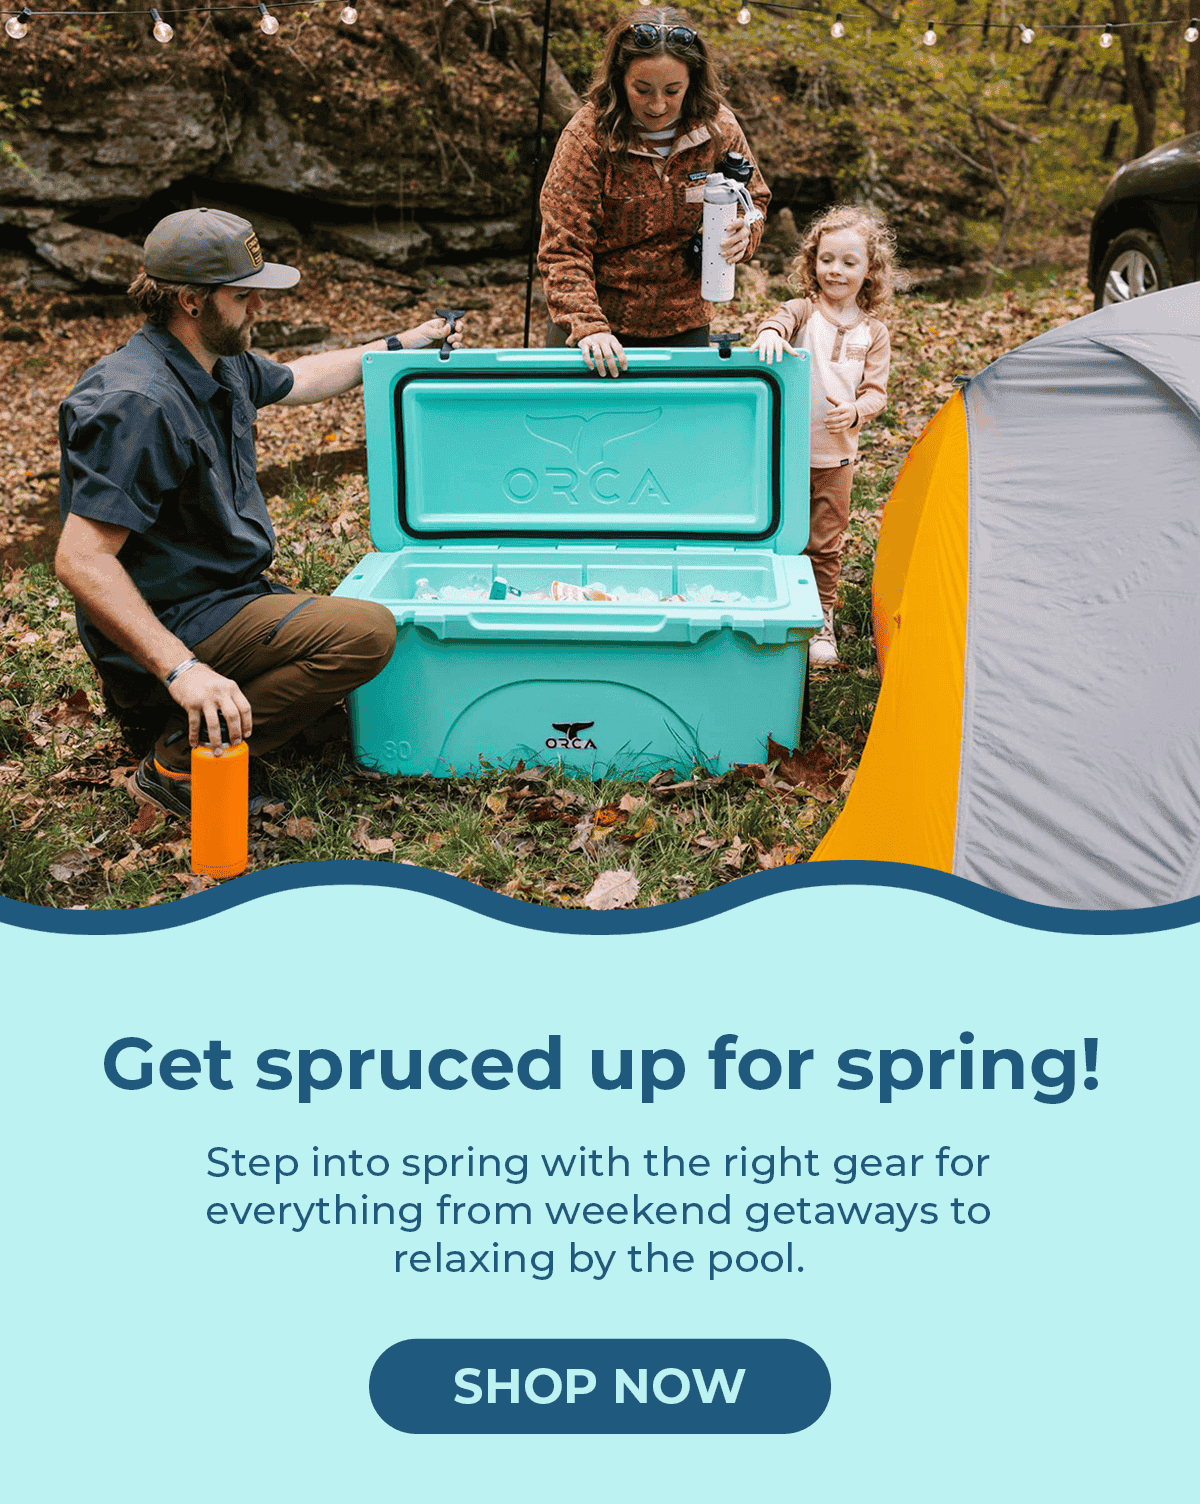 Get spruced up for spring!